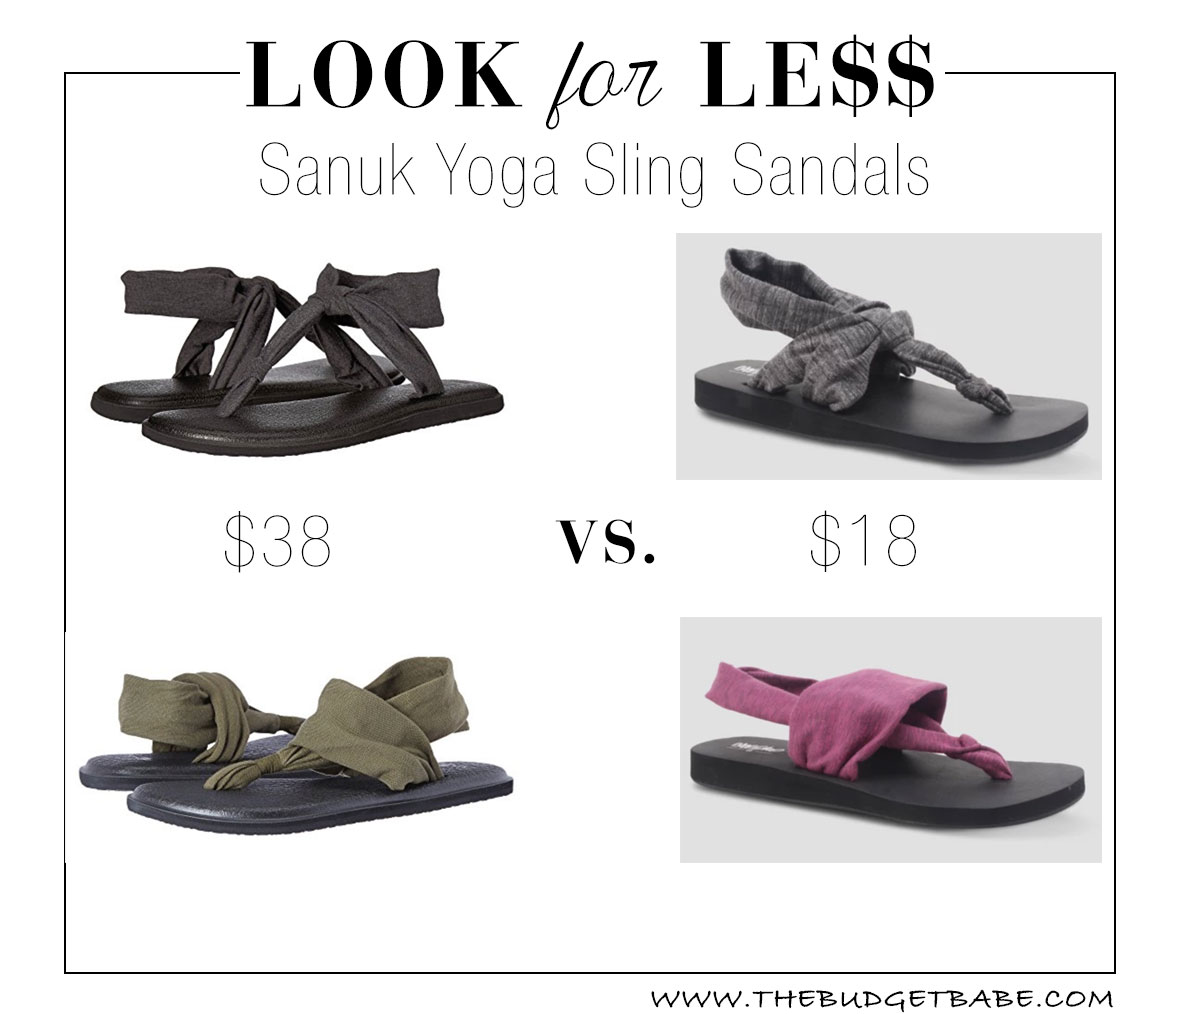 Sanuk Yoga Sling Sandals knockoffs at Target